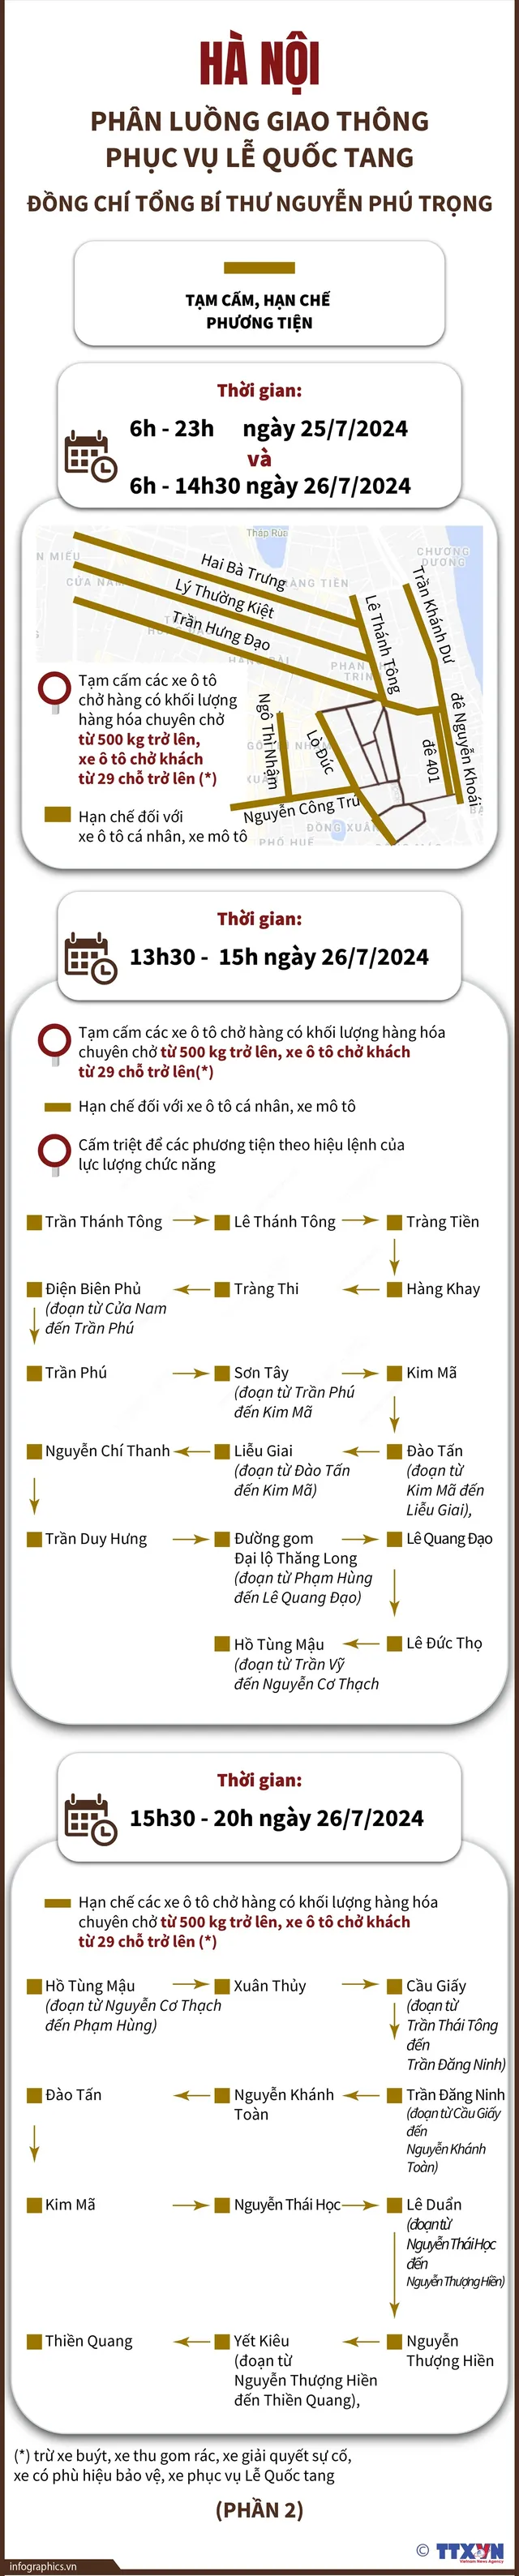 [Infographic] 11 tuyến đường tại Hà Nội cấm phương tiện giao thông trong 2 ngày Quốc tang - Ảnh 2.